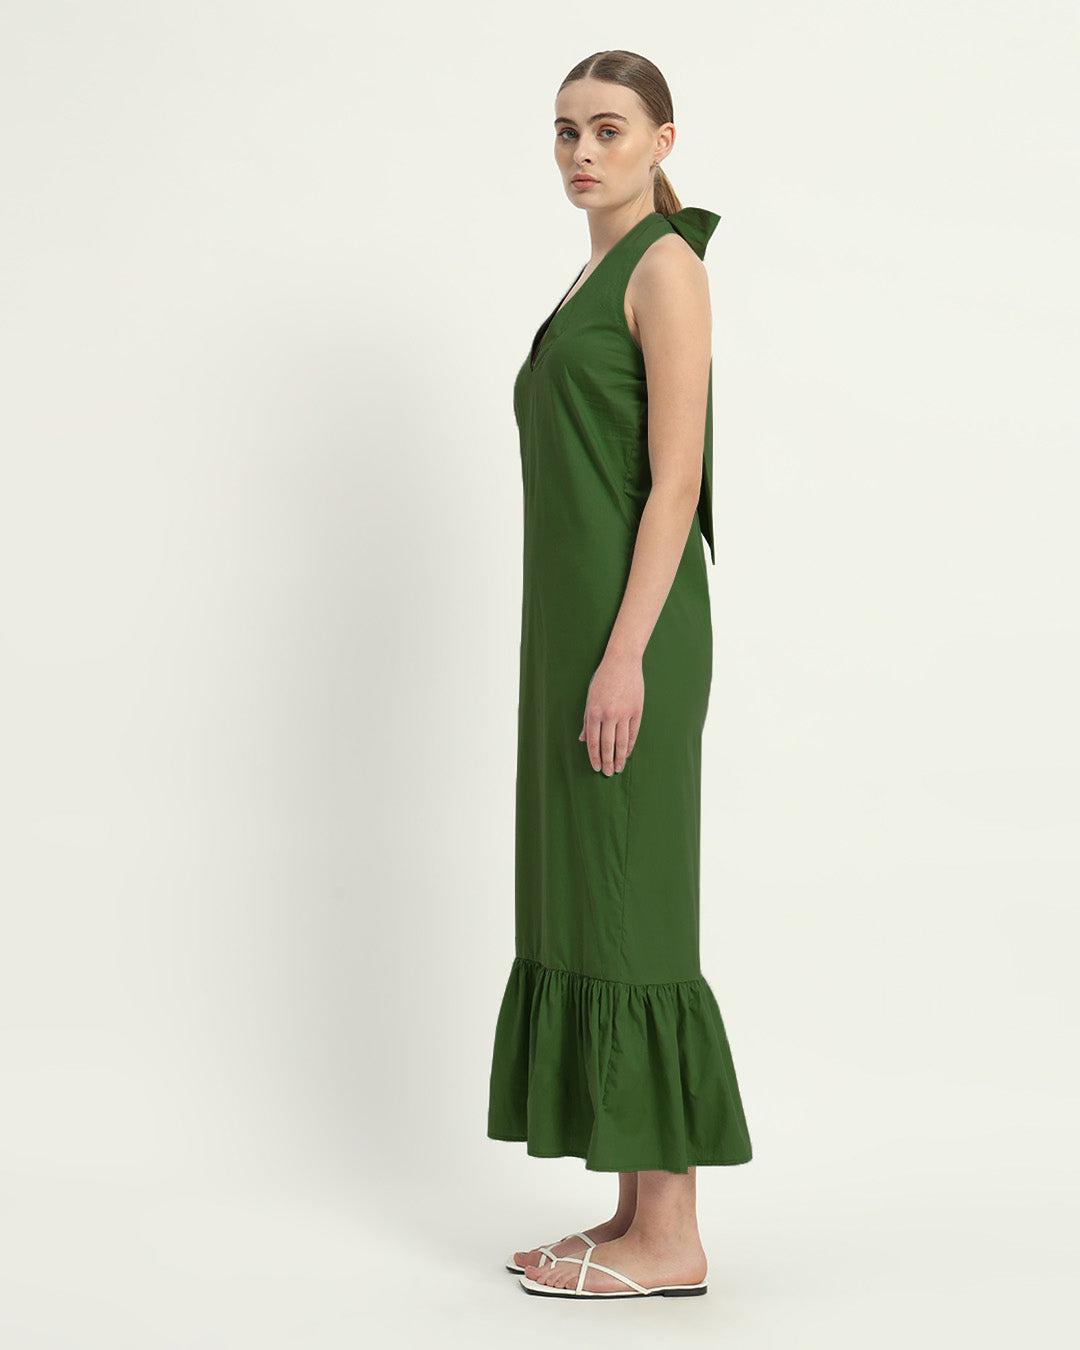 The Emerald Wellsville Cotton Dress